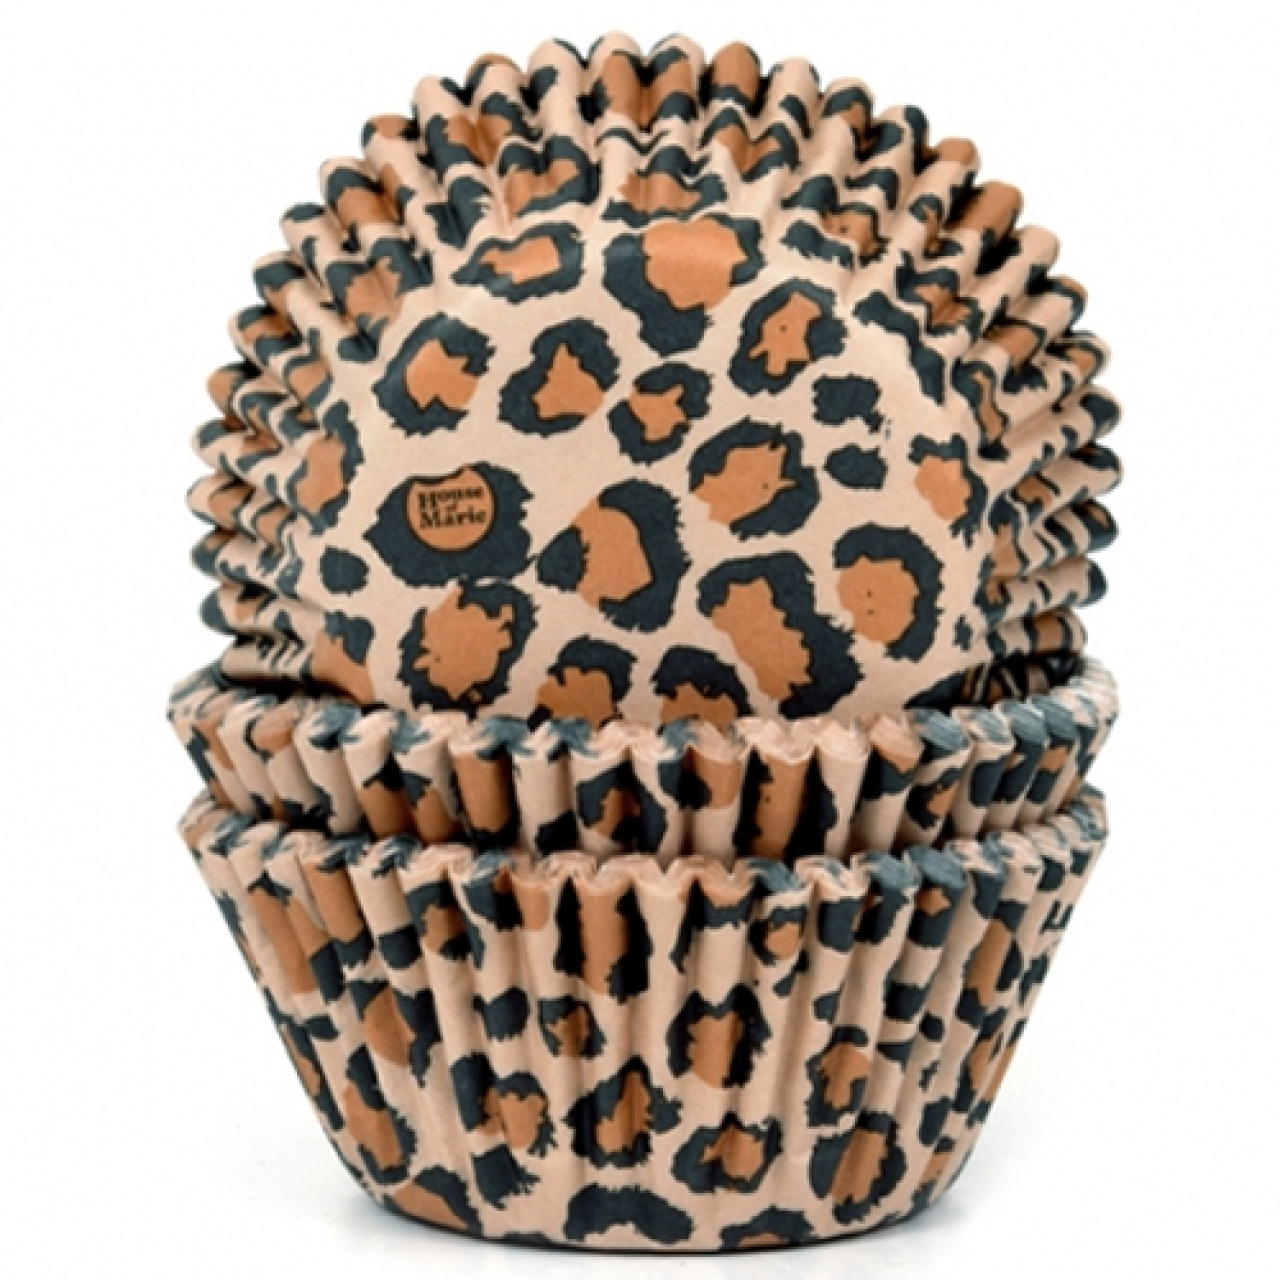 HoM Muffinförmchen, Leopard, 50 Stck, 5,0 cm